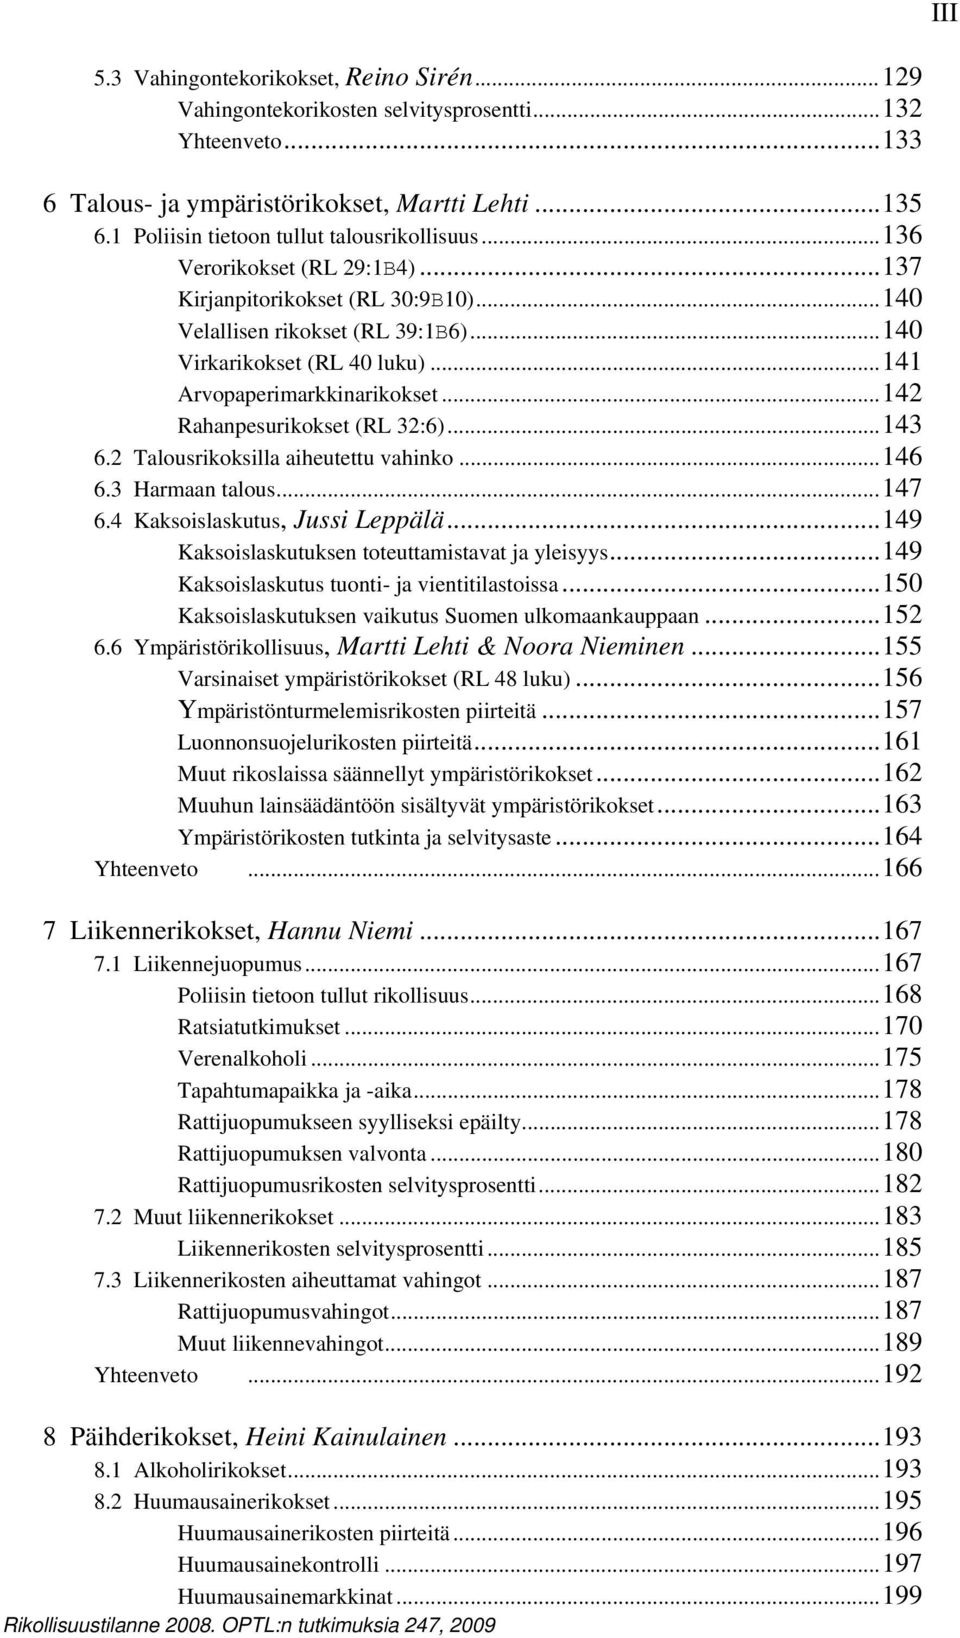 ..141 Arvopaperimarkkinarikokset...142 Rahanpesurikokset (RL 32:6)...143 6.2 Talousrikoksilla aiheutettu vahinko...146 6.3 Harmaan talous...147 6.4 Kaksoislaskutus, Jussi Leppälä.